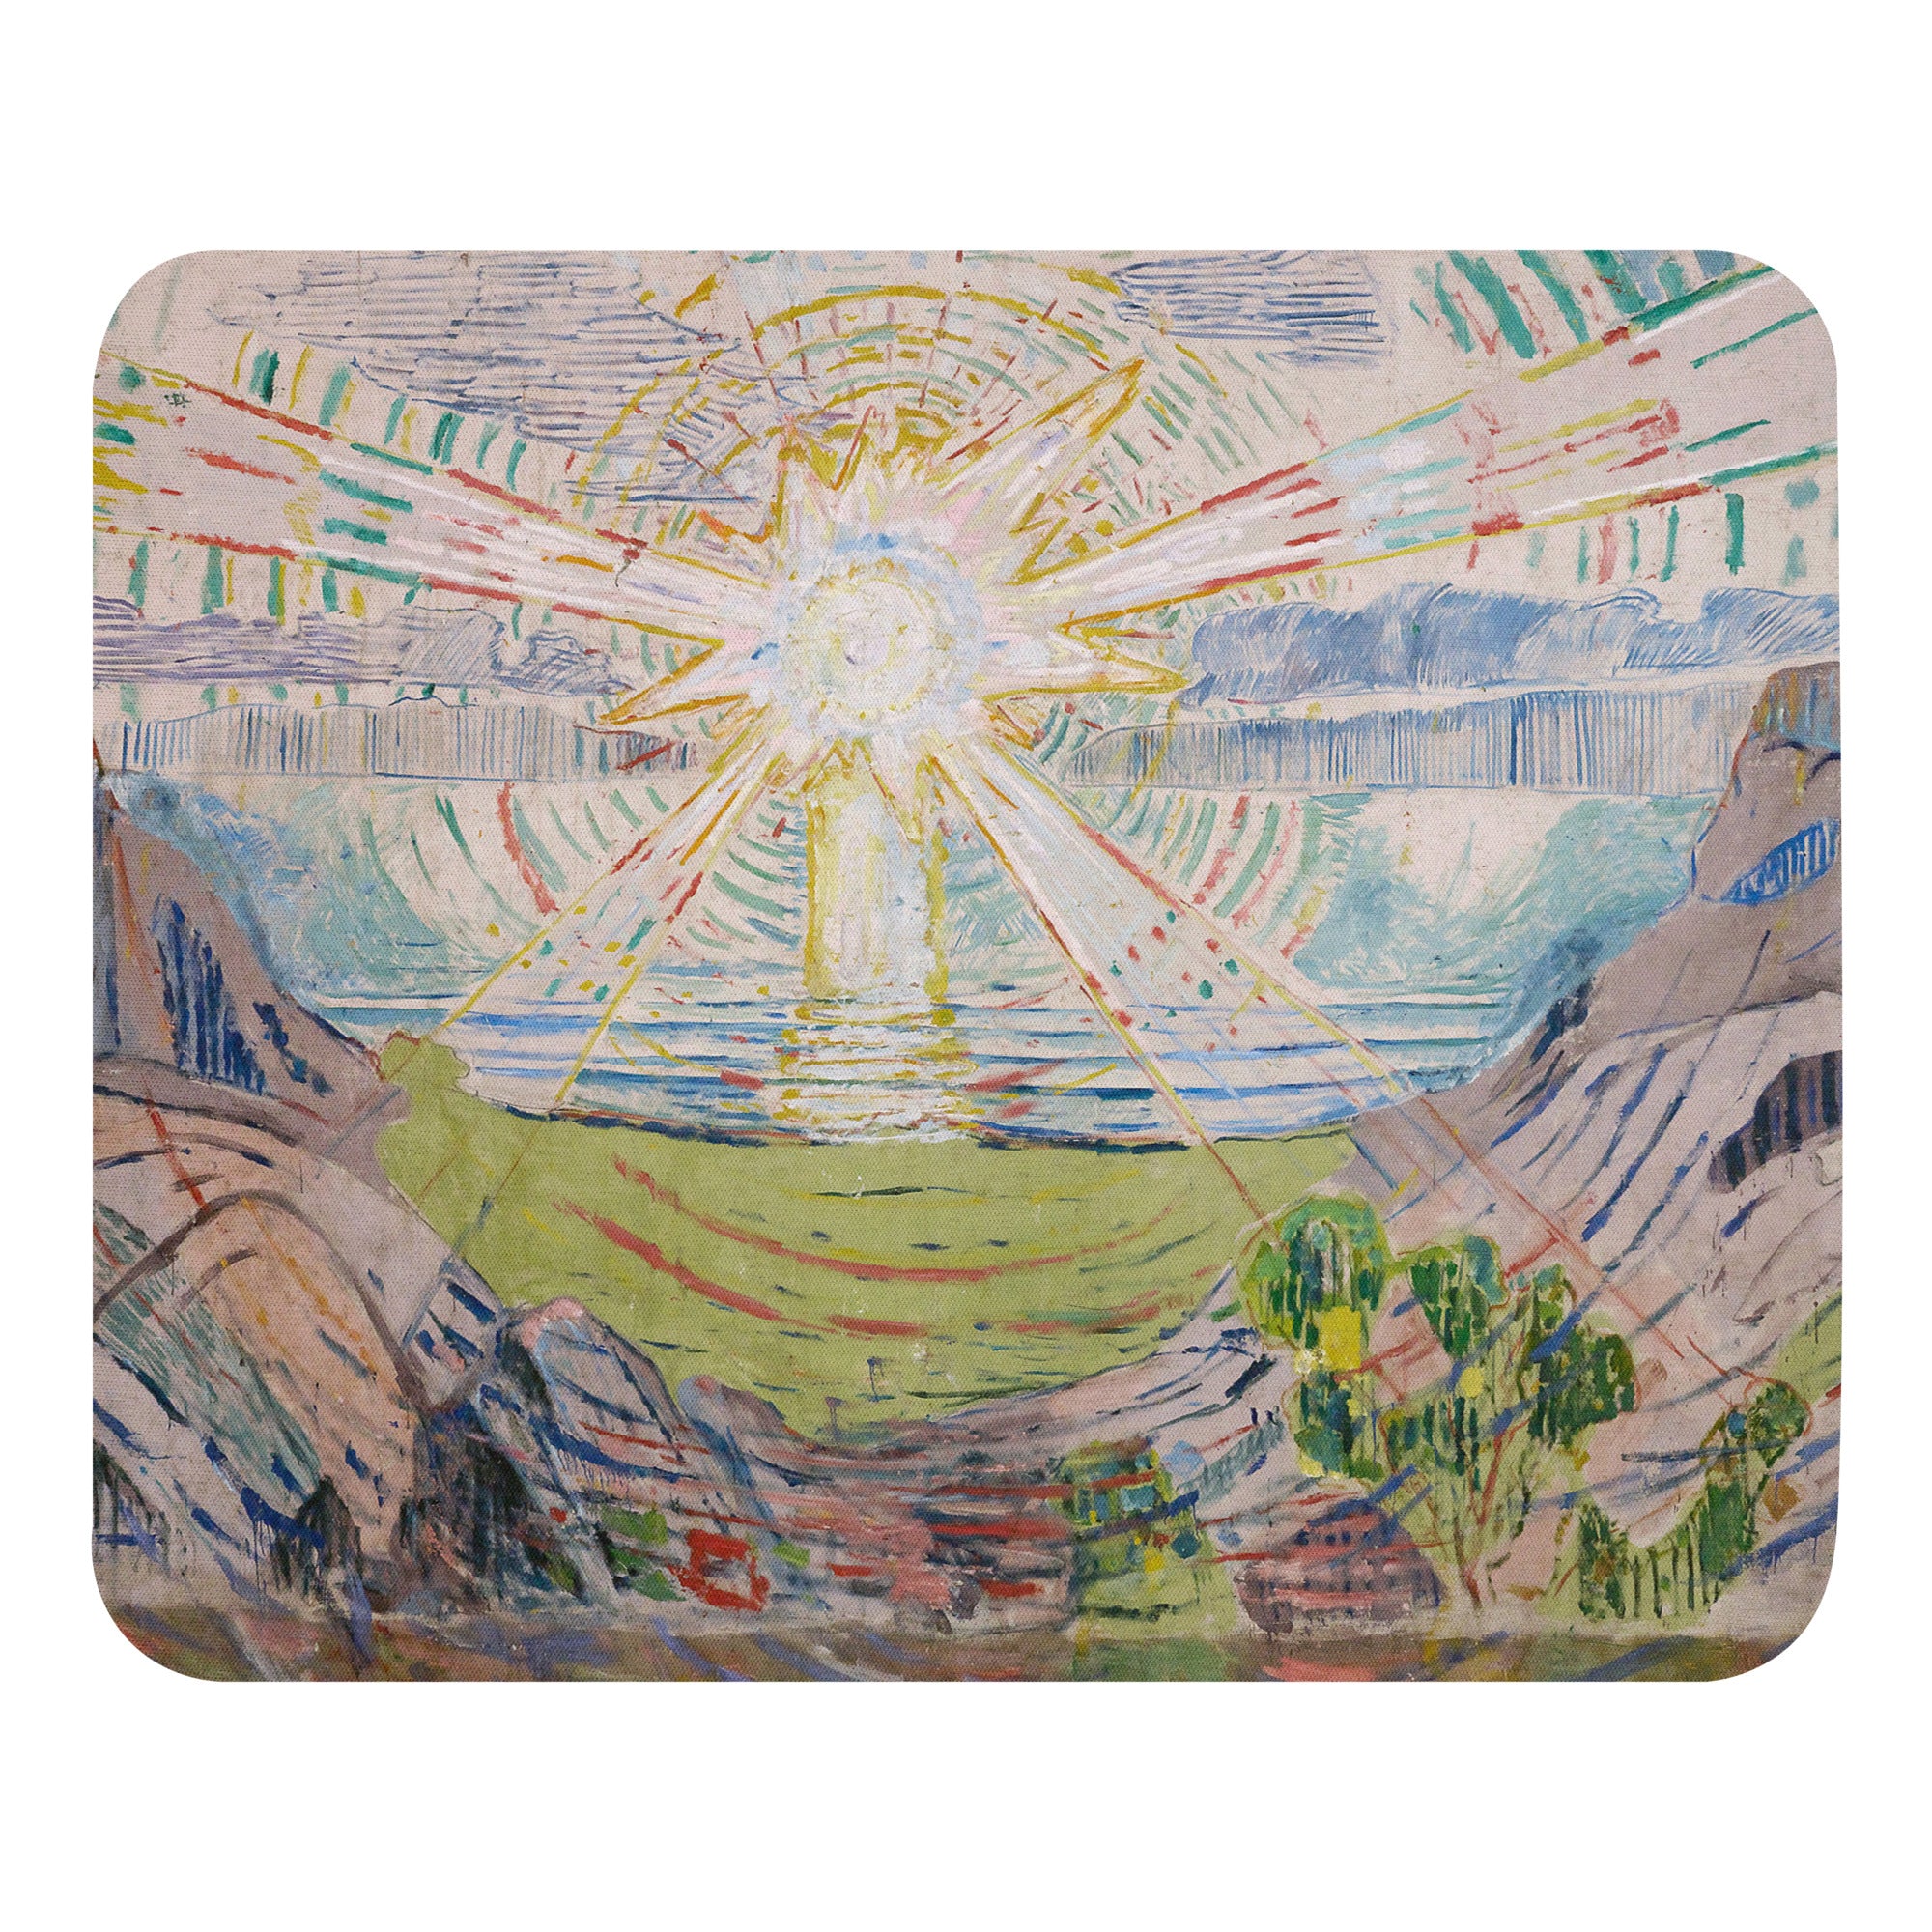 Mauspad mit berühmtem Gemälde „Die Sonne“ von Edvard Munch | Hochwertiges Kunst-Mauspad